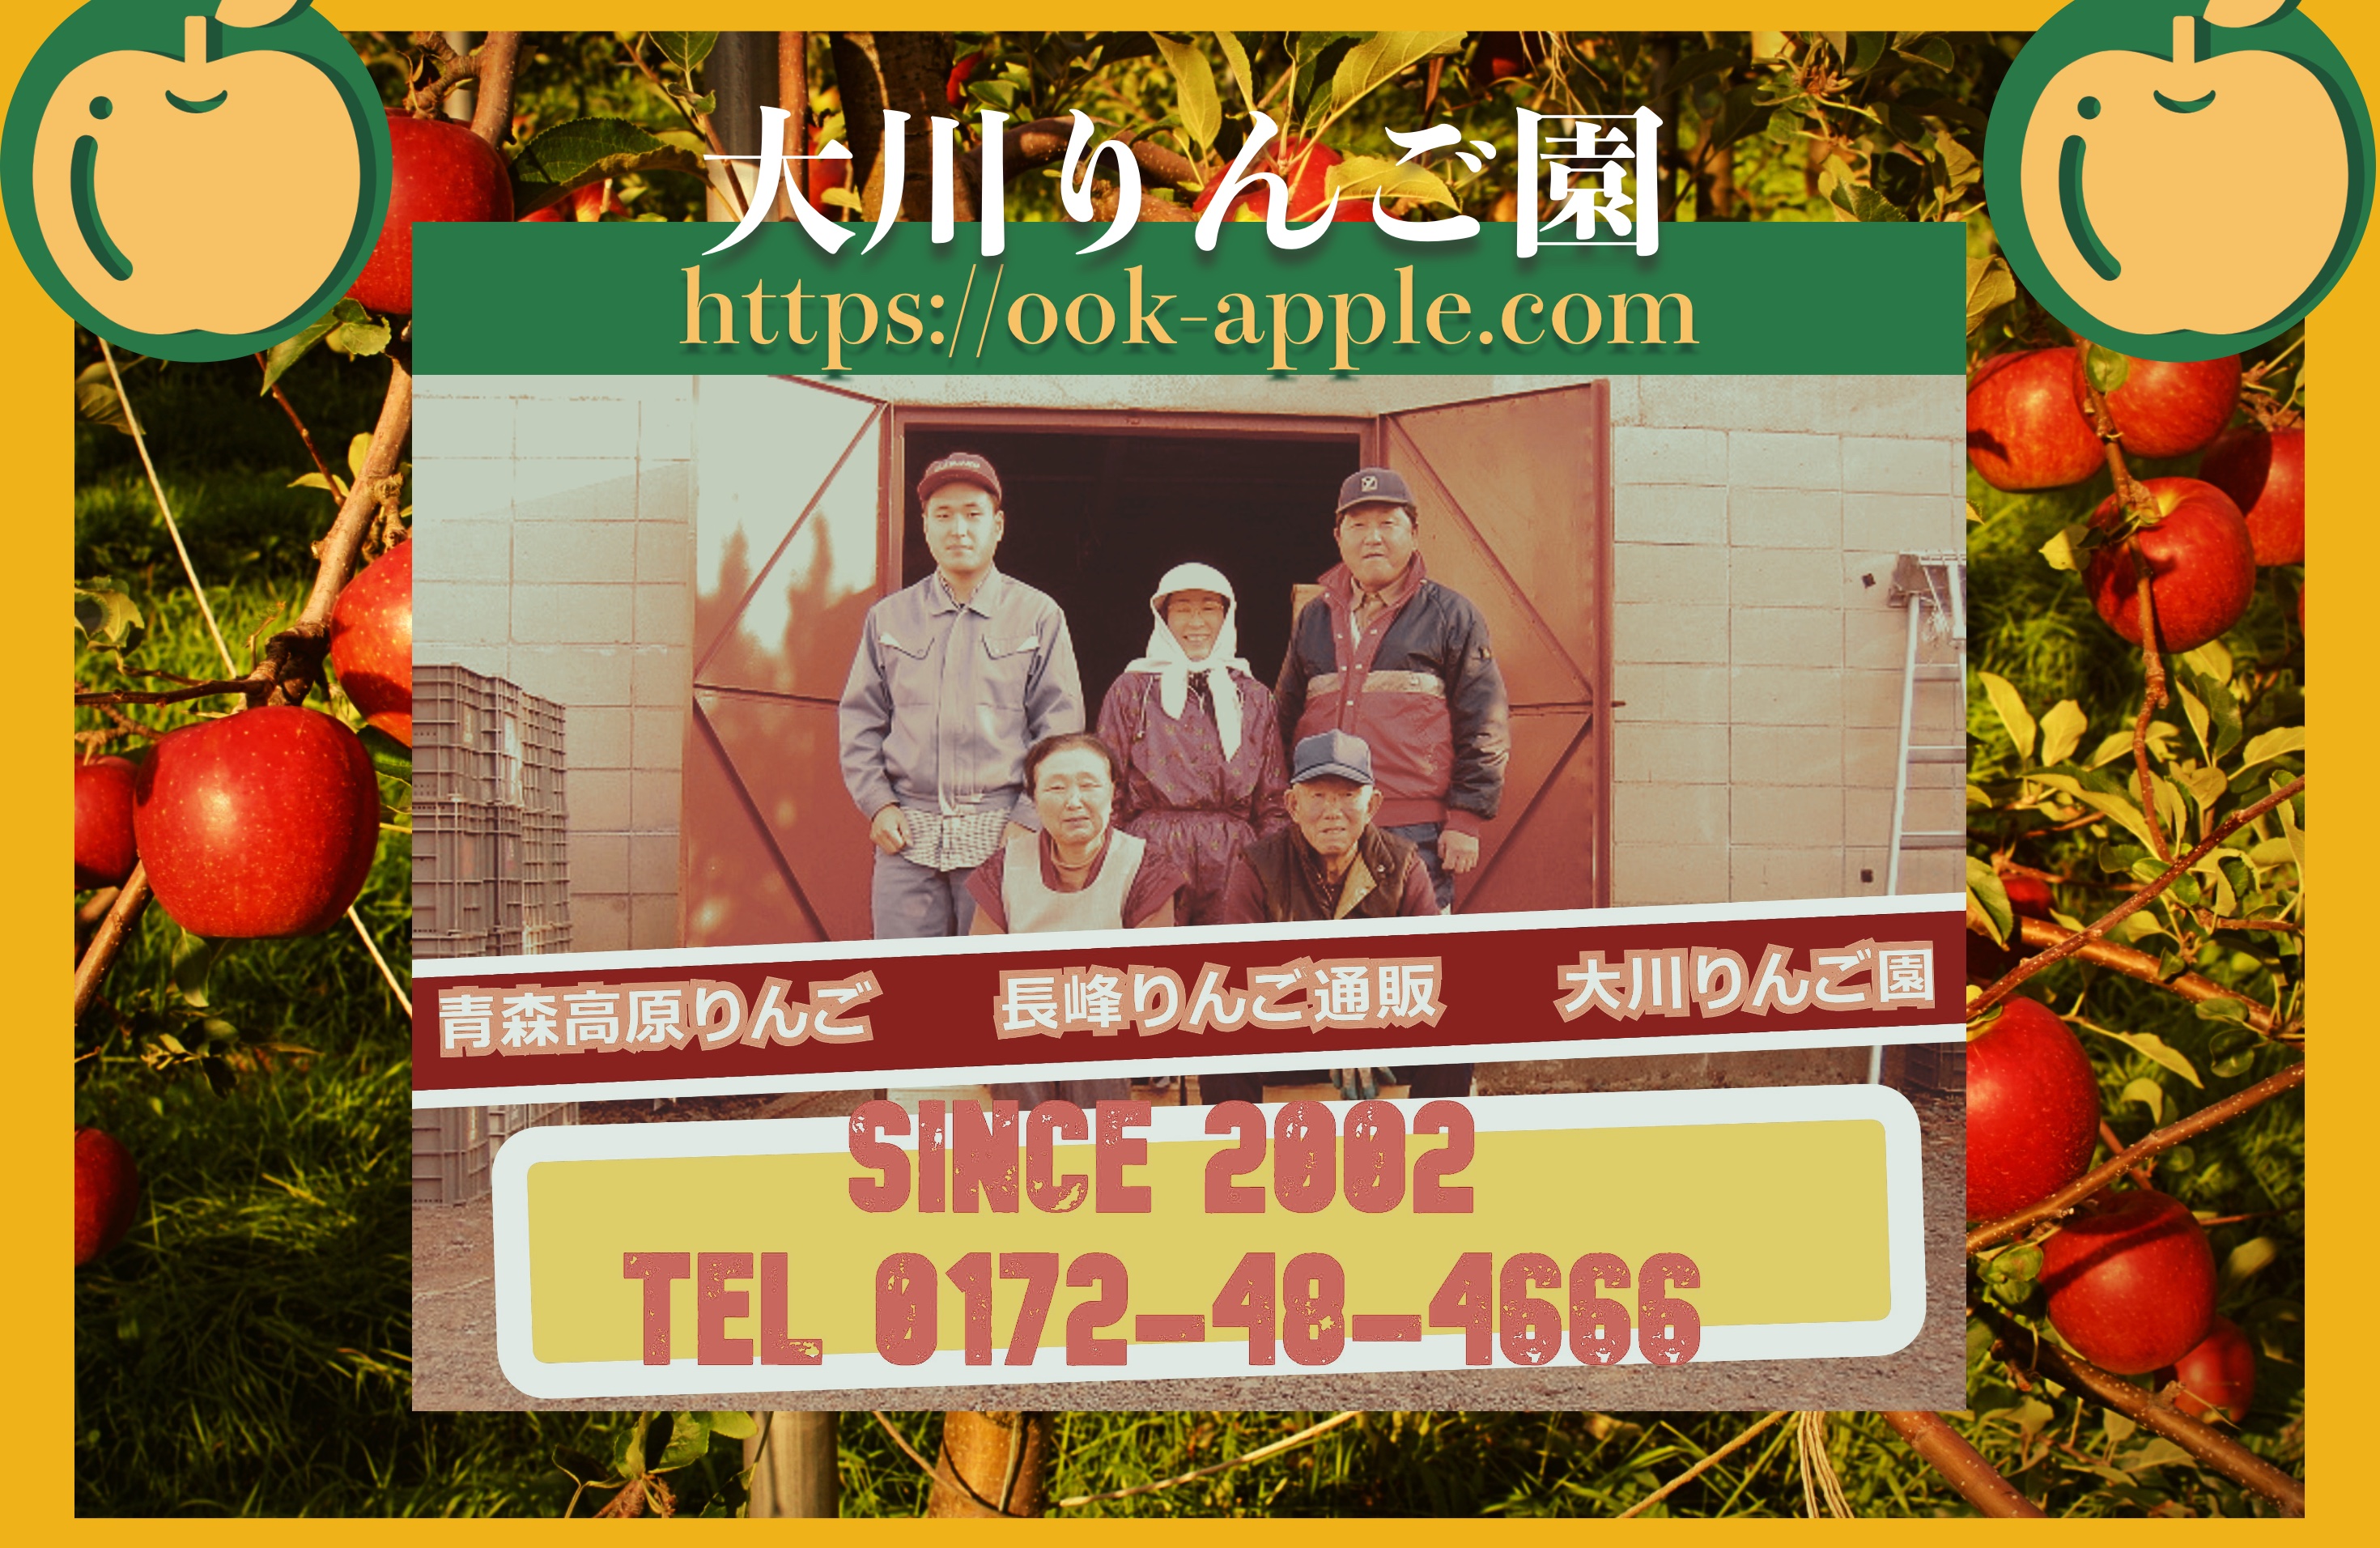 りんご通販の家族紹介。青森通販のりんご家族です。